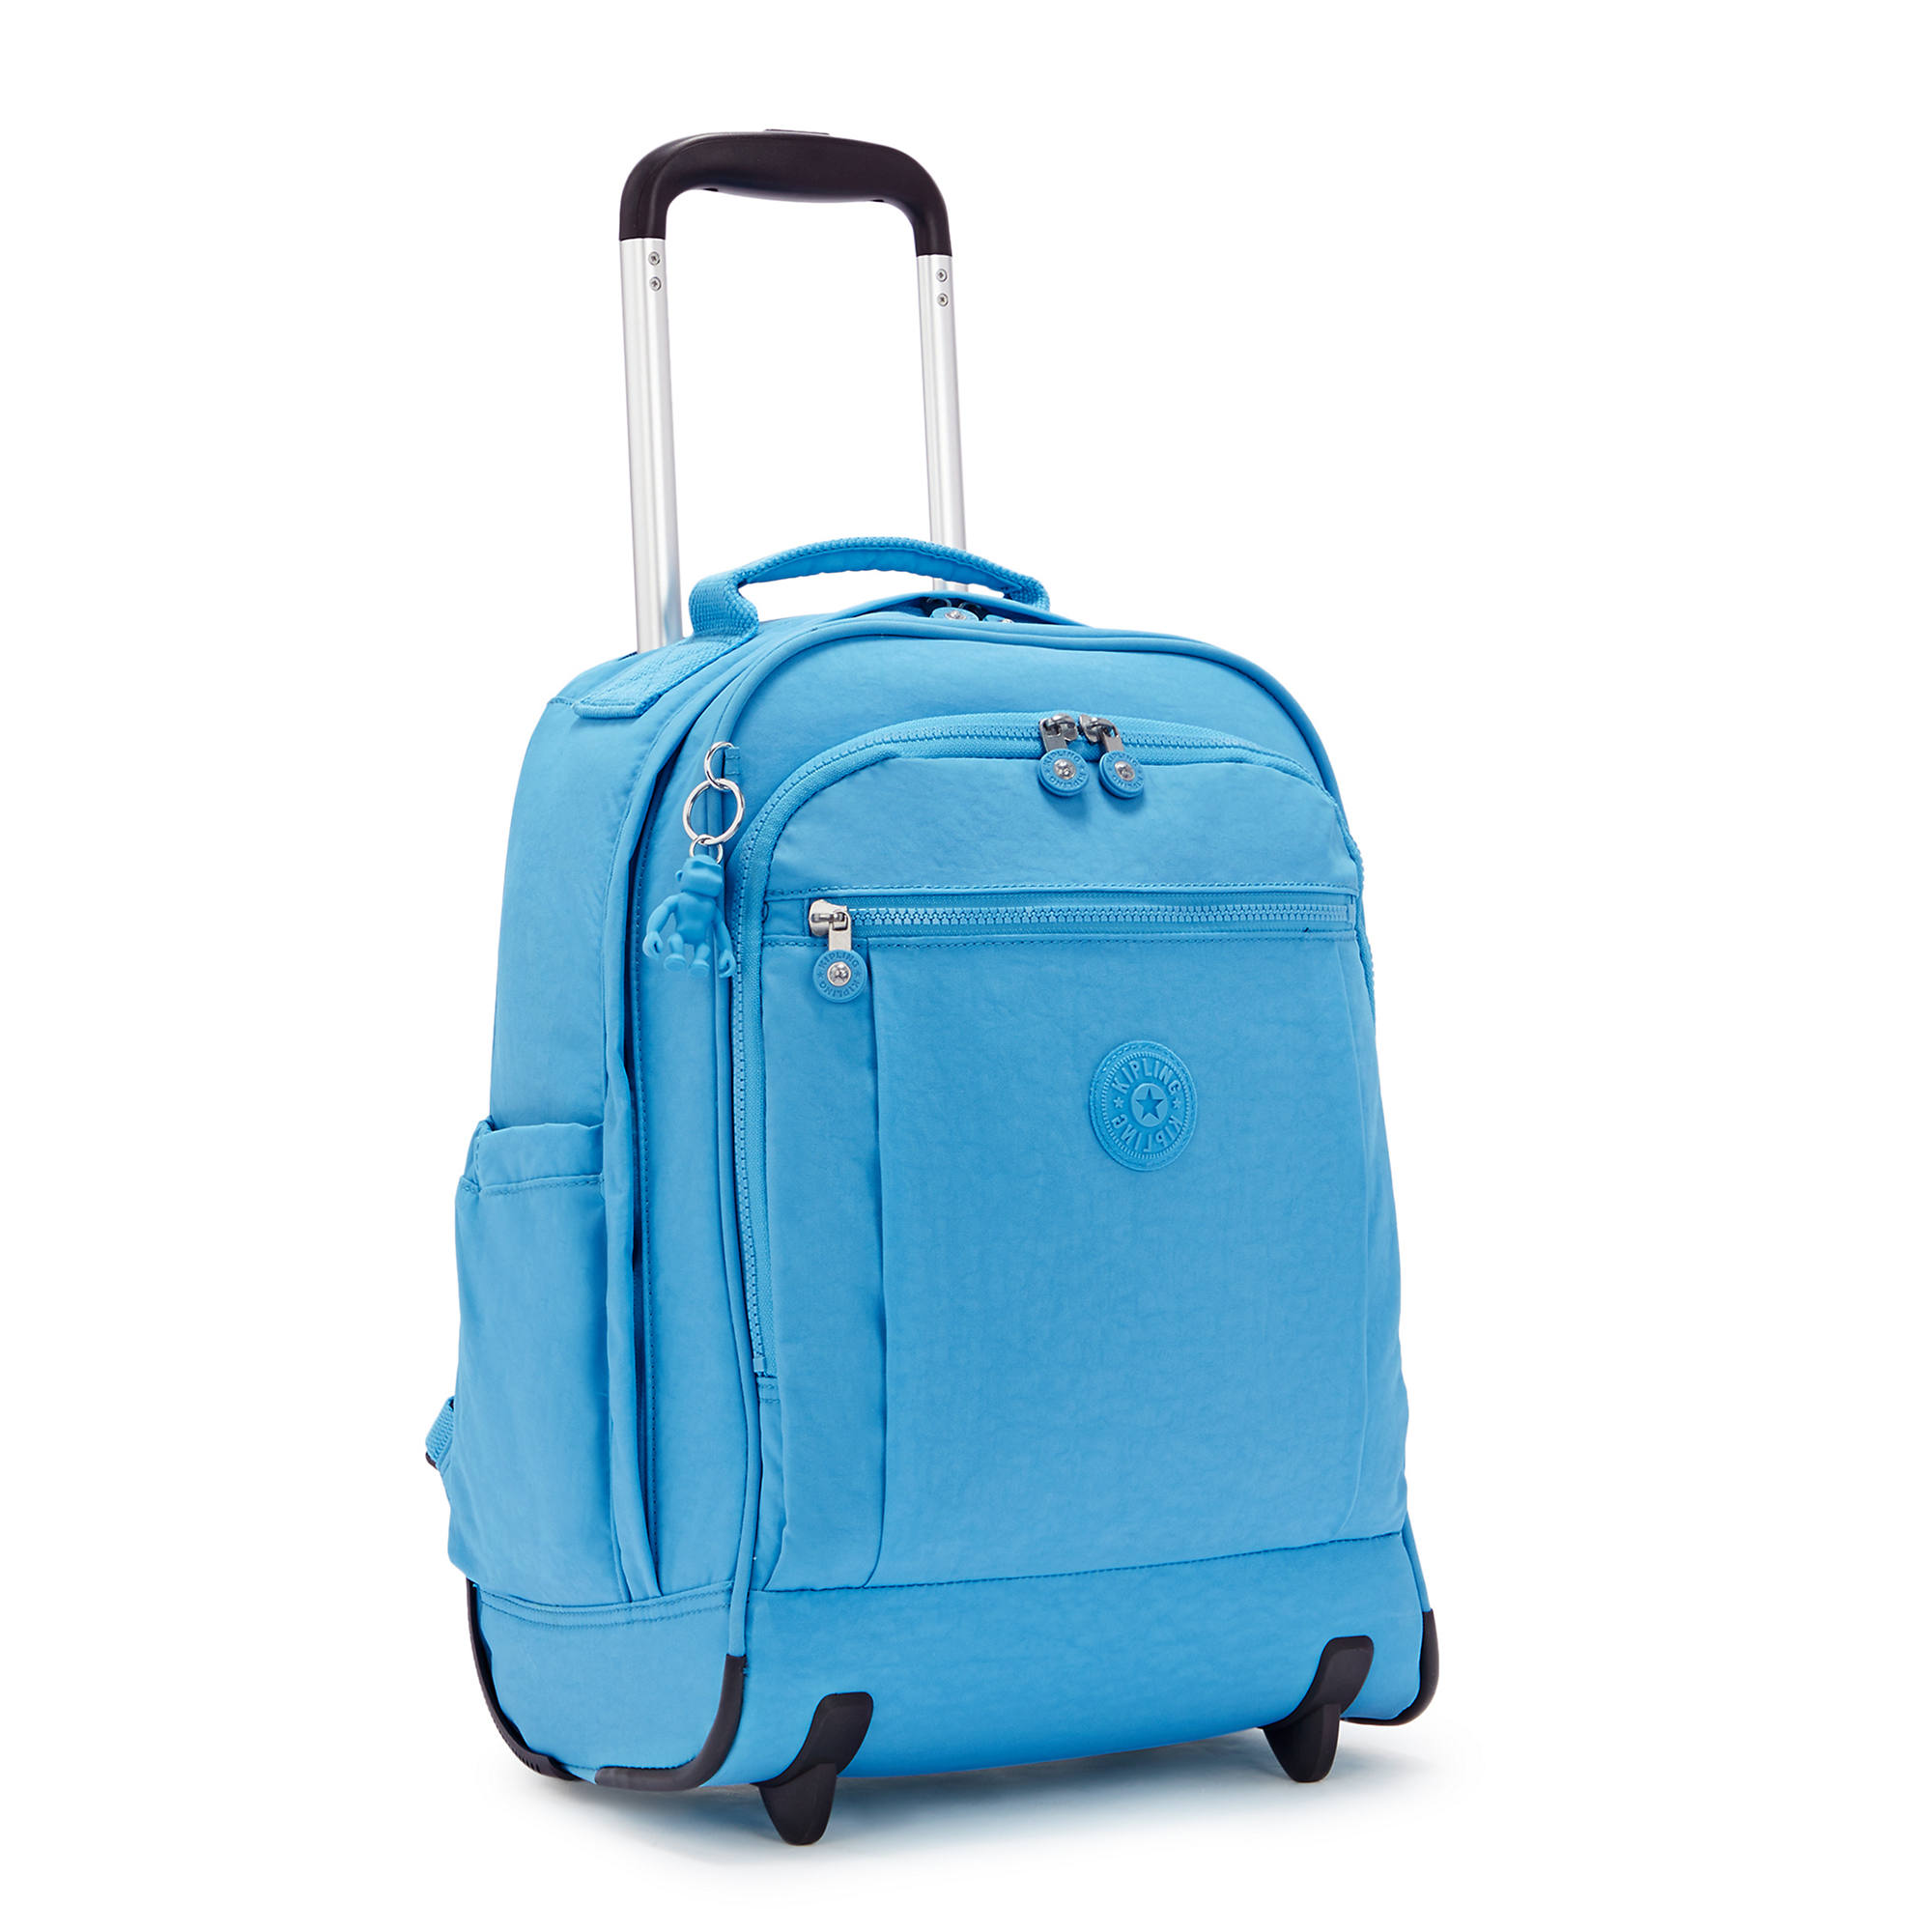 Kipling Gaze Large Rolling Backpack | eBay